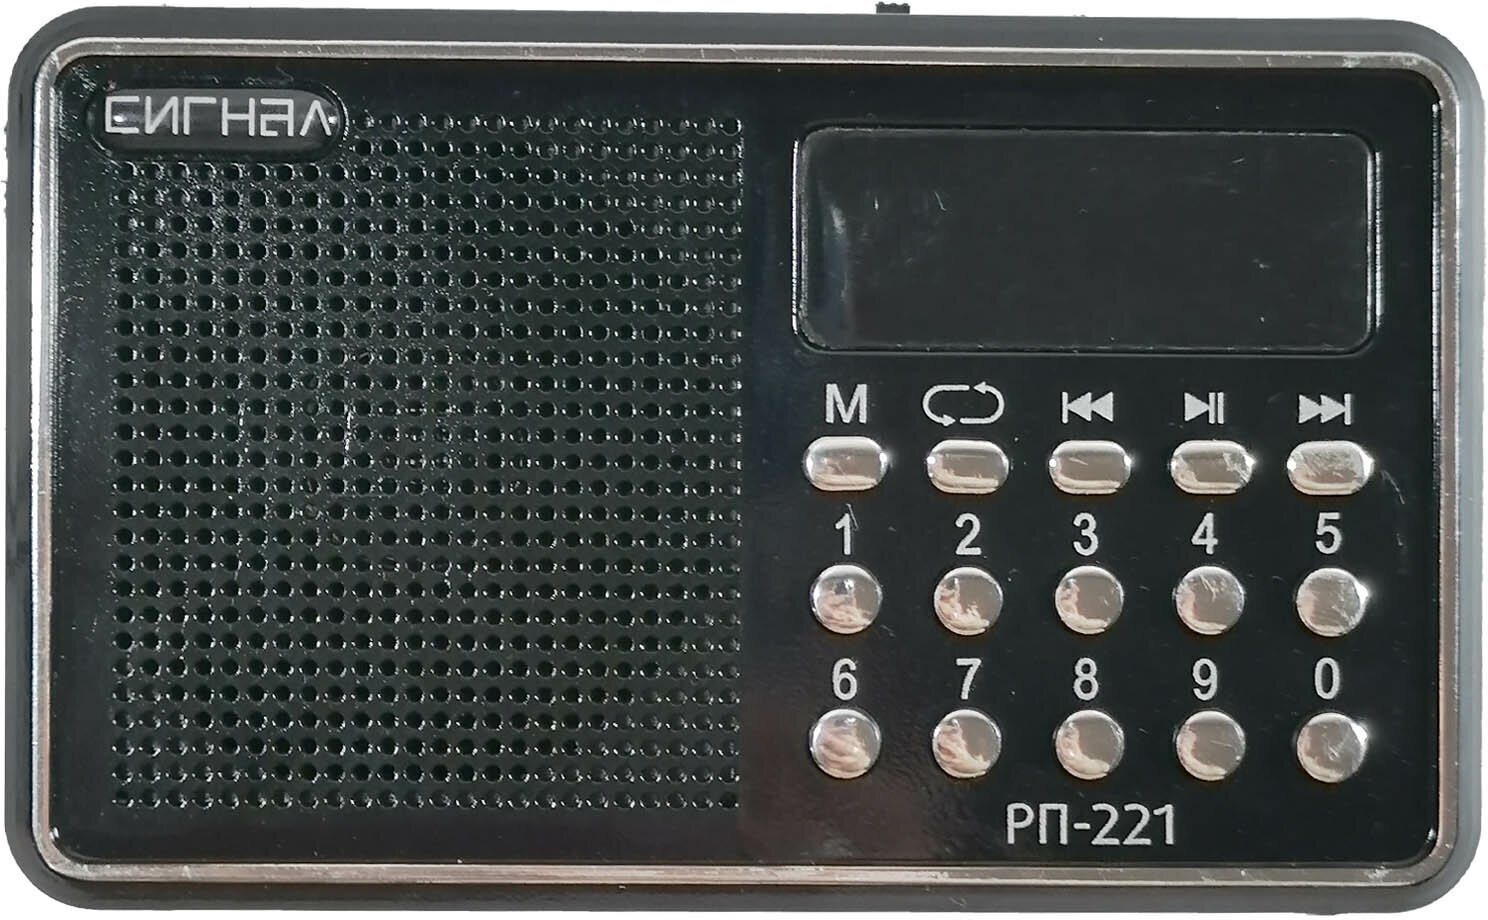 Радиоприемник портативный Сигнал РП-221 черный USB microSD